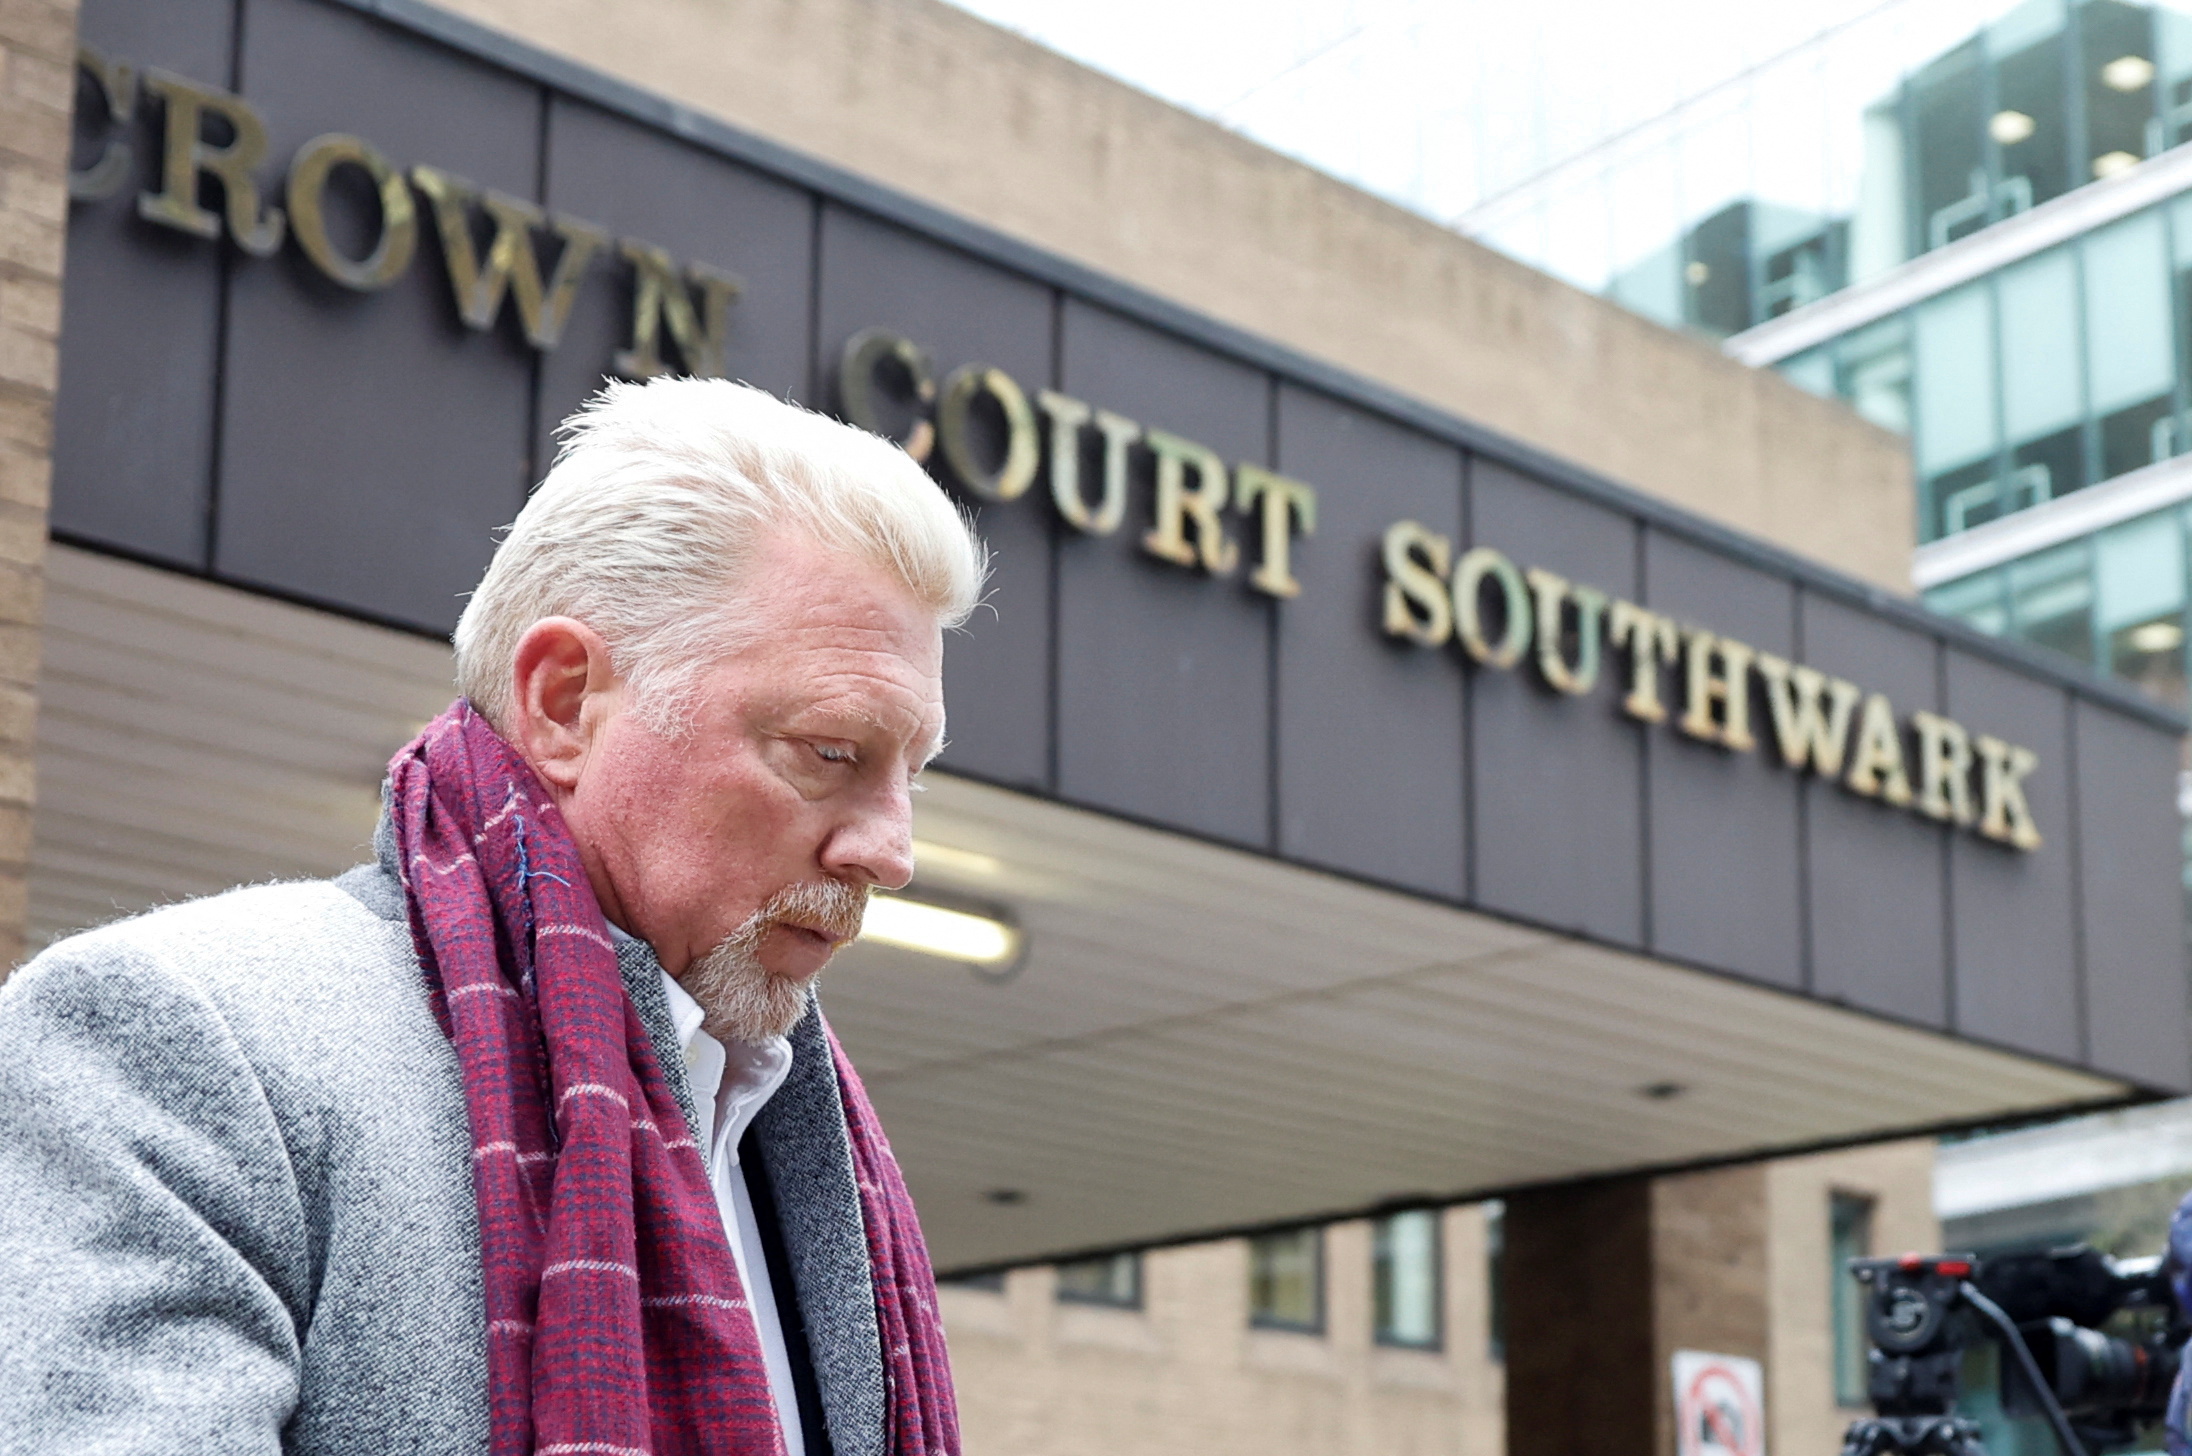 El ex tenista se va después de su juicio por delitos de bancarrota en Southwark Crown Court en Londres, Gran Bretaña, el 8 de abril de 2022. REUTERS/Peter Cziborra
